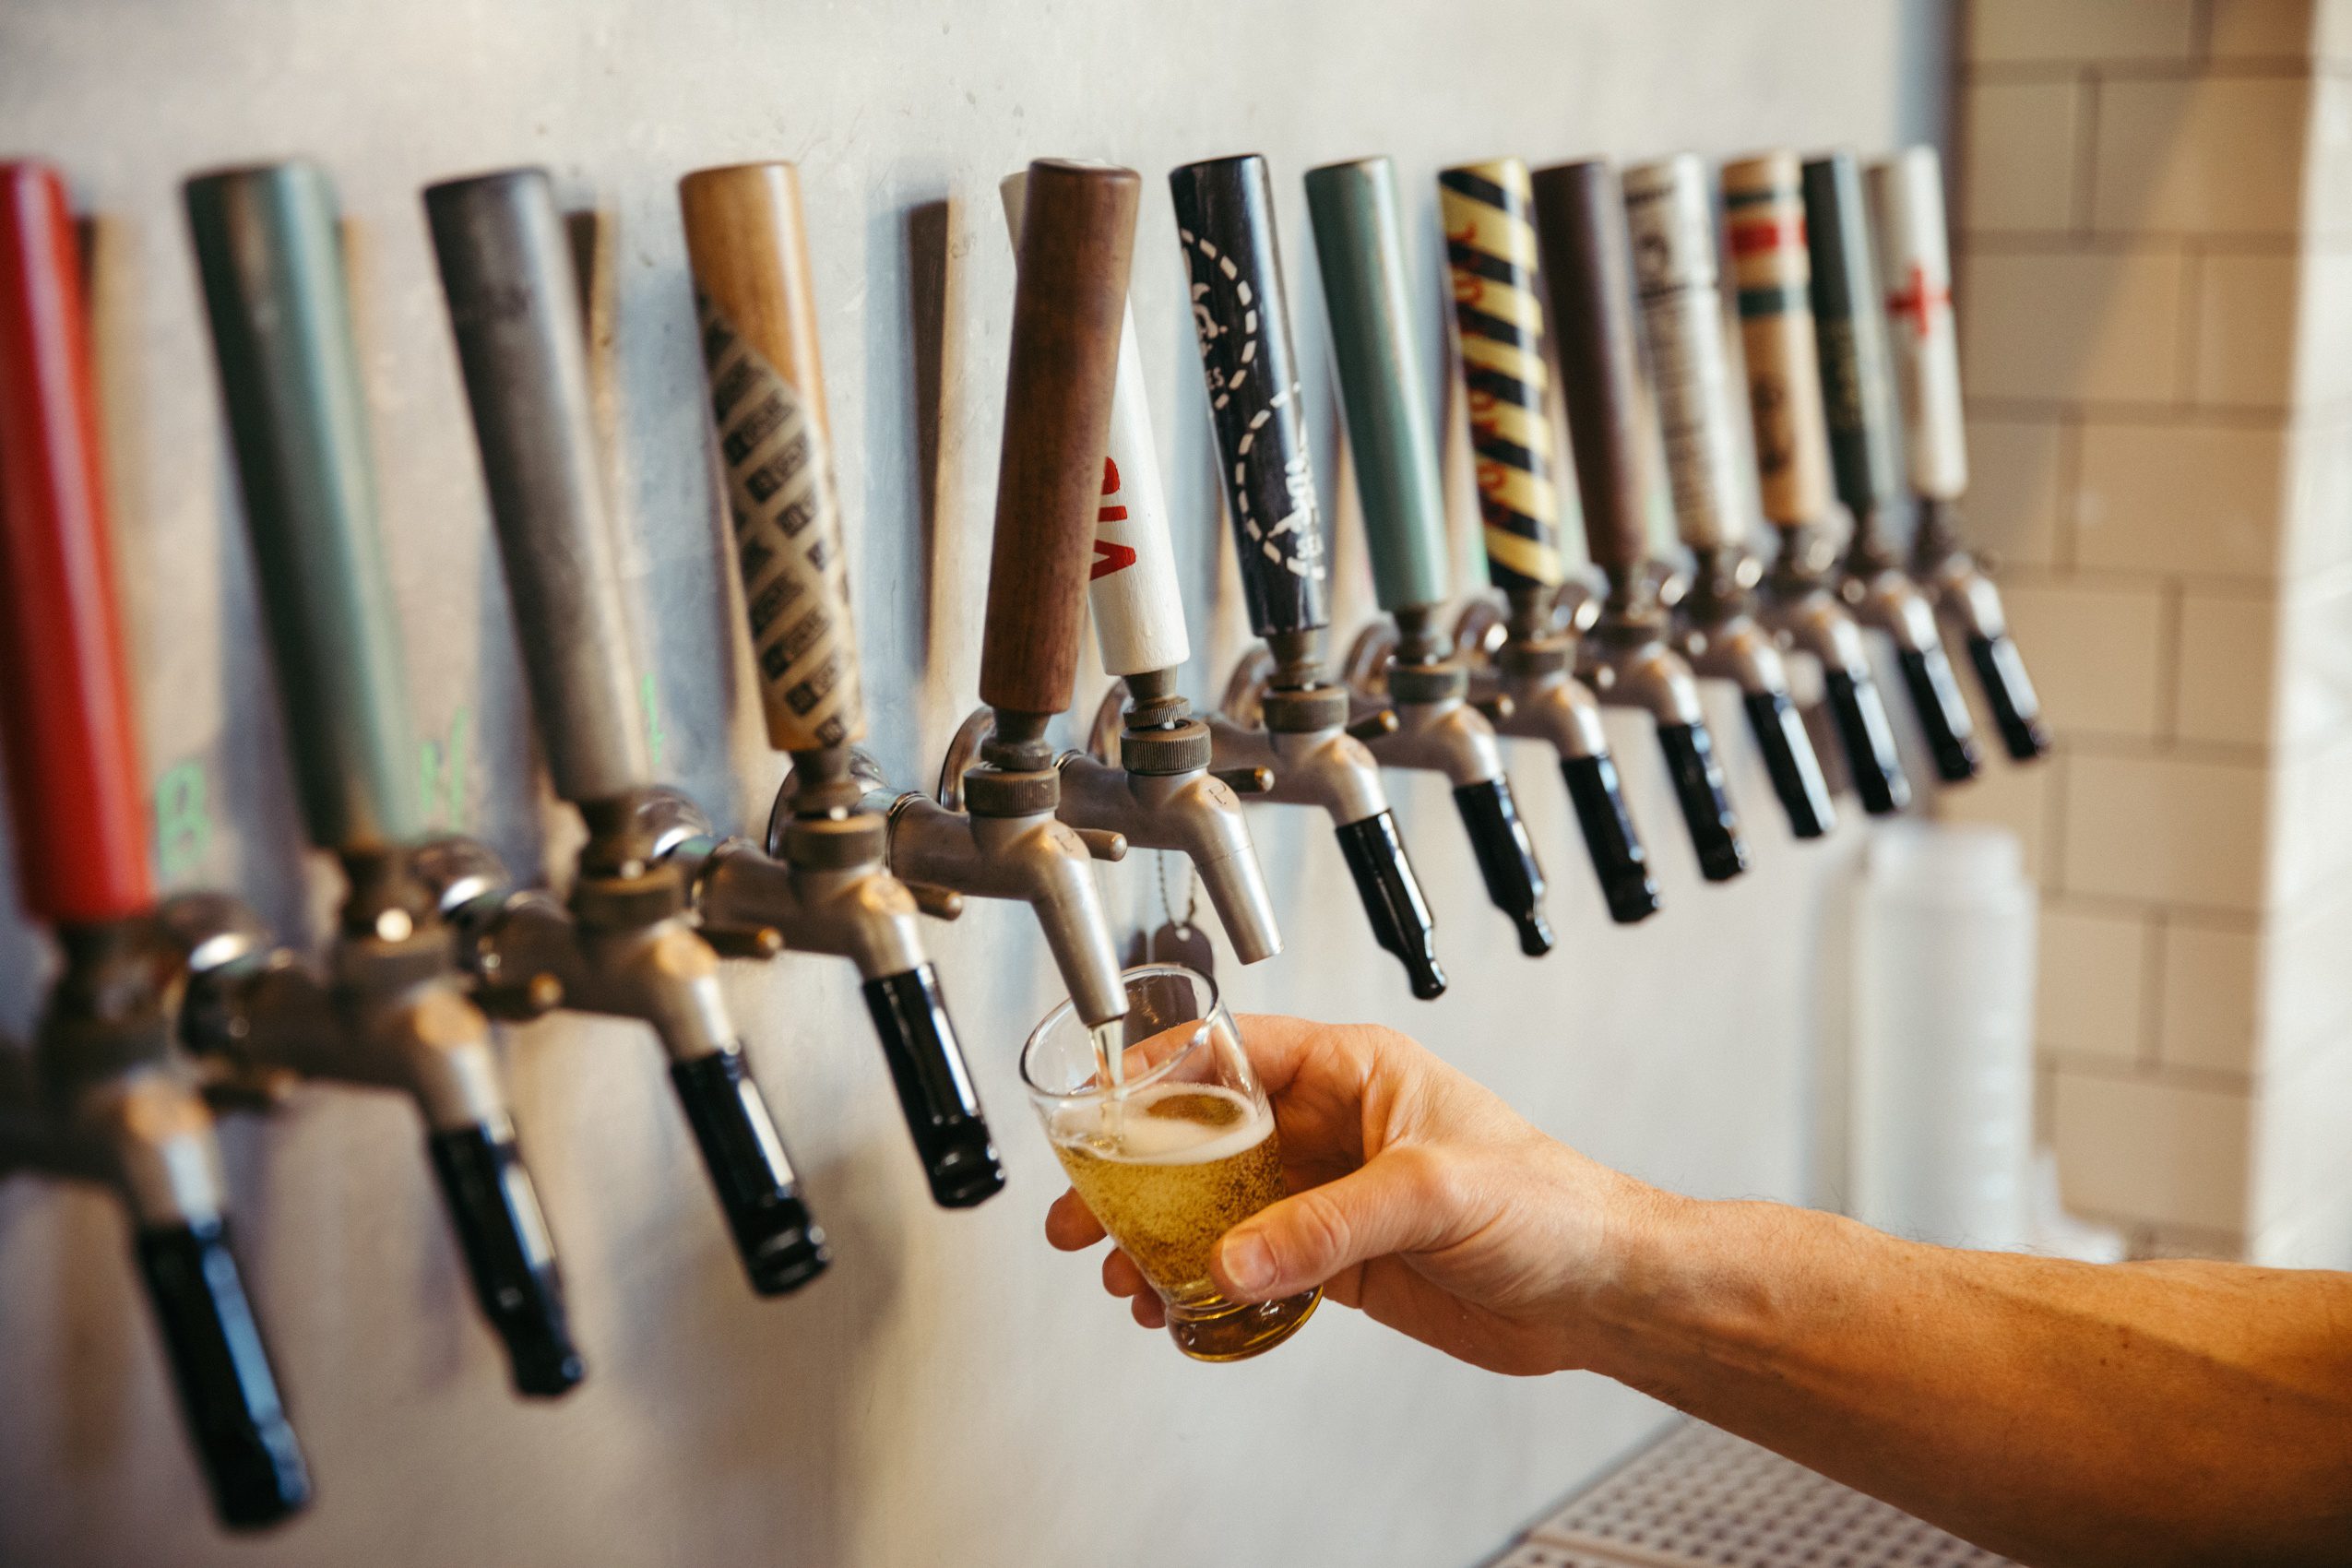 Beer tap handles at The Rake in Alameda, California